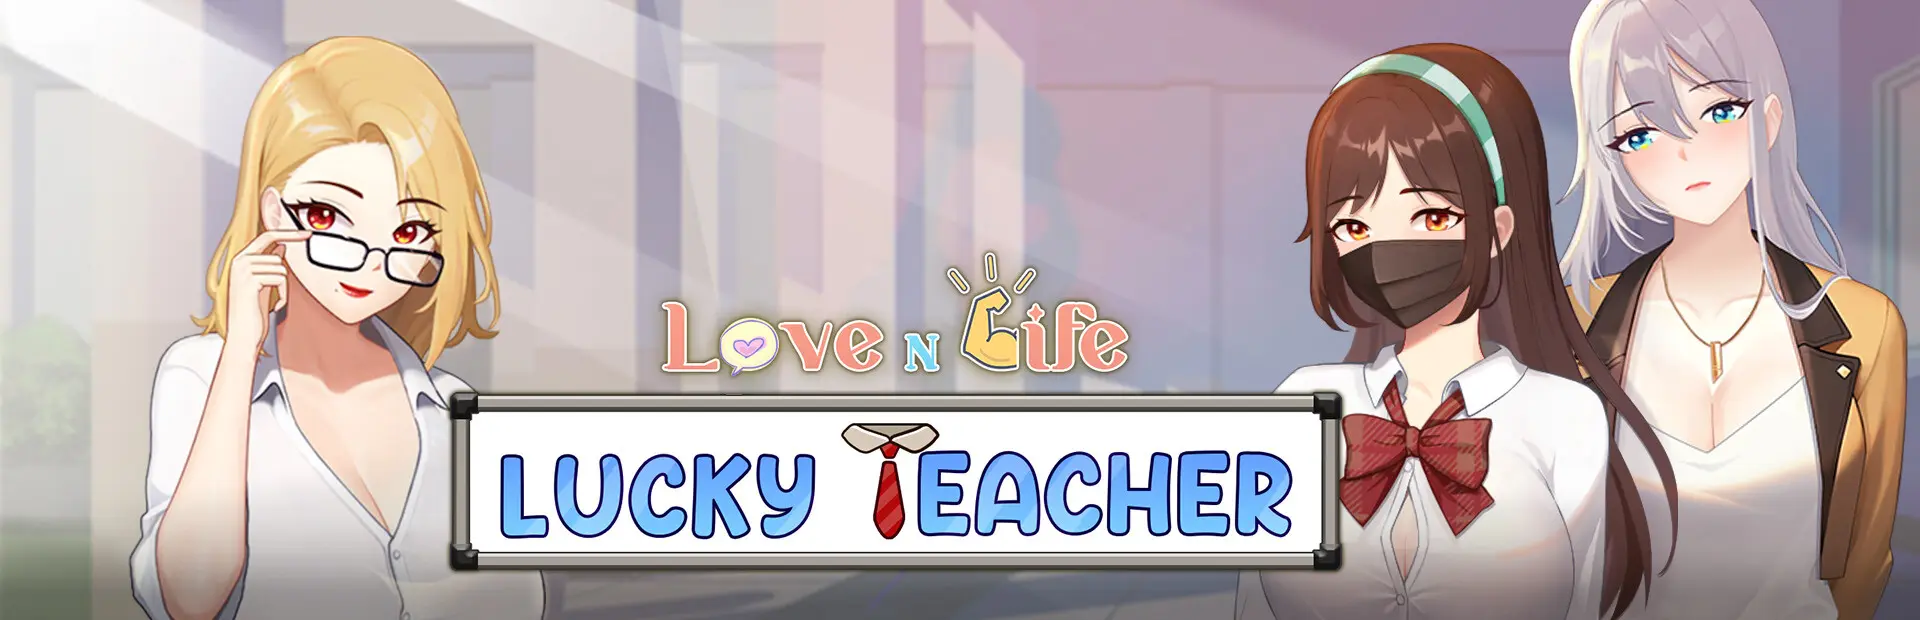 Love n Life: Lucky Teacher main image